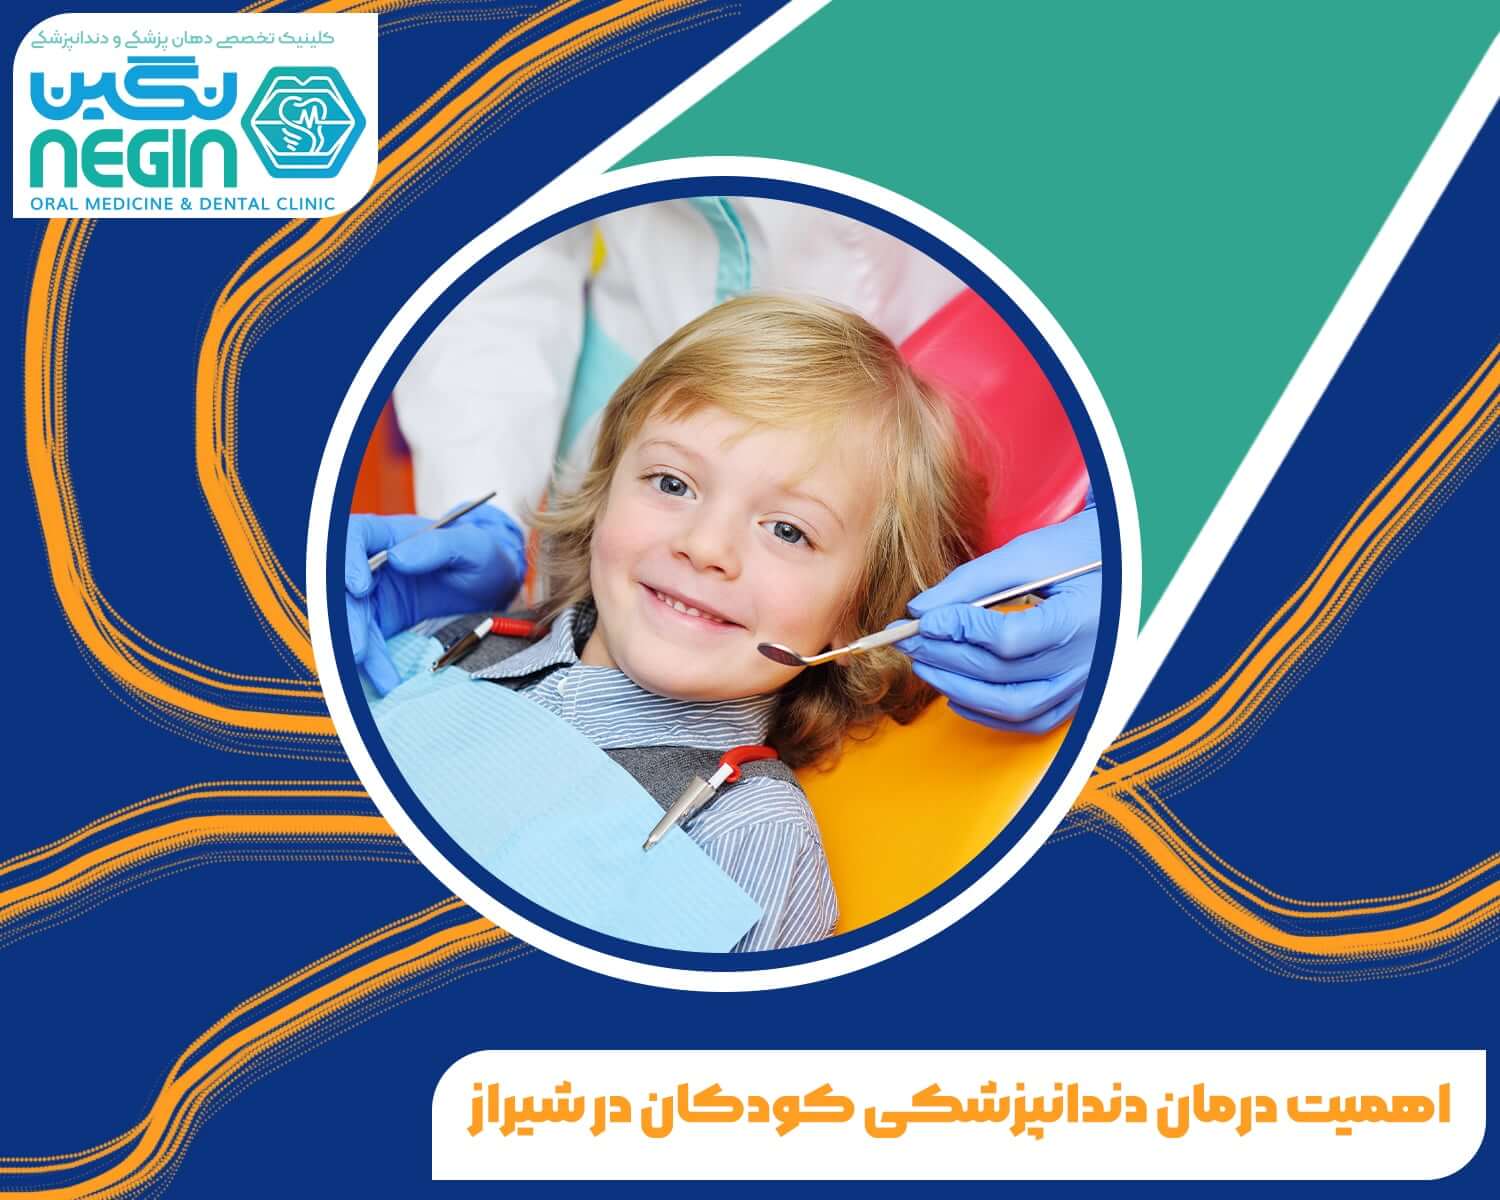 اهمیت درمان دندانپزشکی کودکان در شیراز